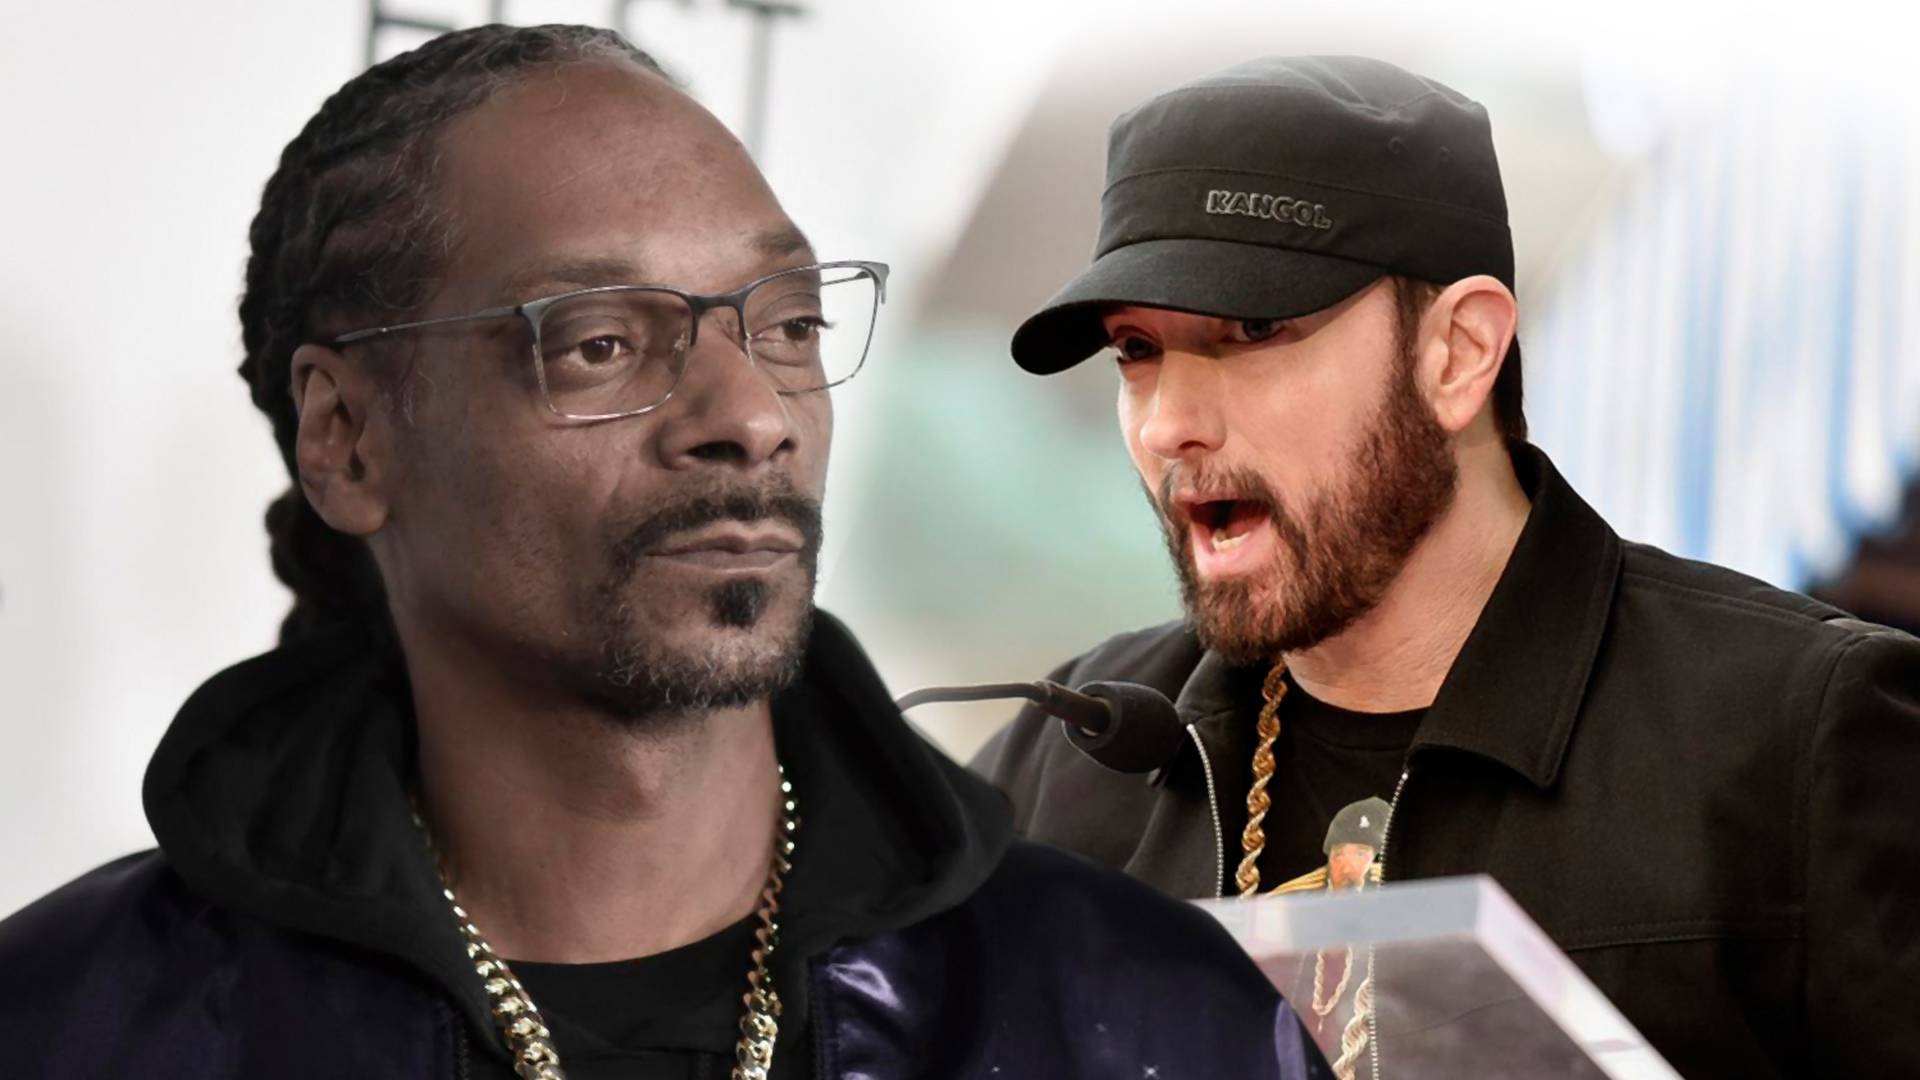 Nedostajao nam je stari dobri reperski fajt: Eminem i Snoop Dogg se prozivaju, pao je prvi diss